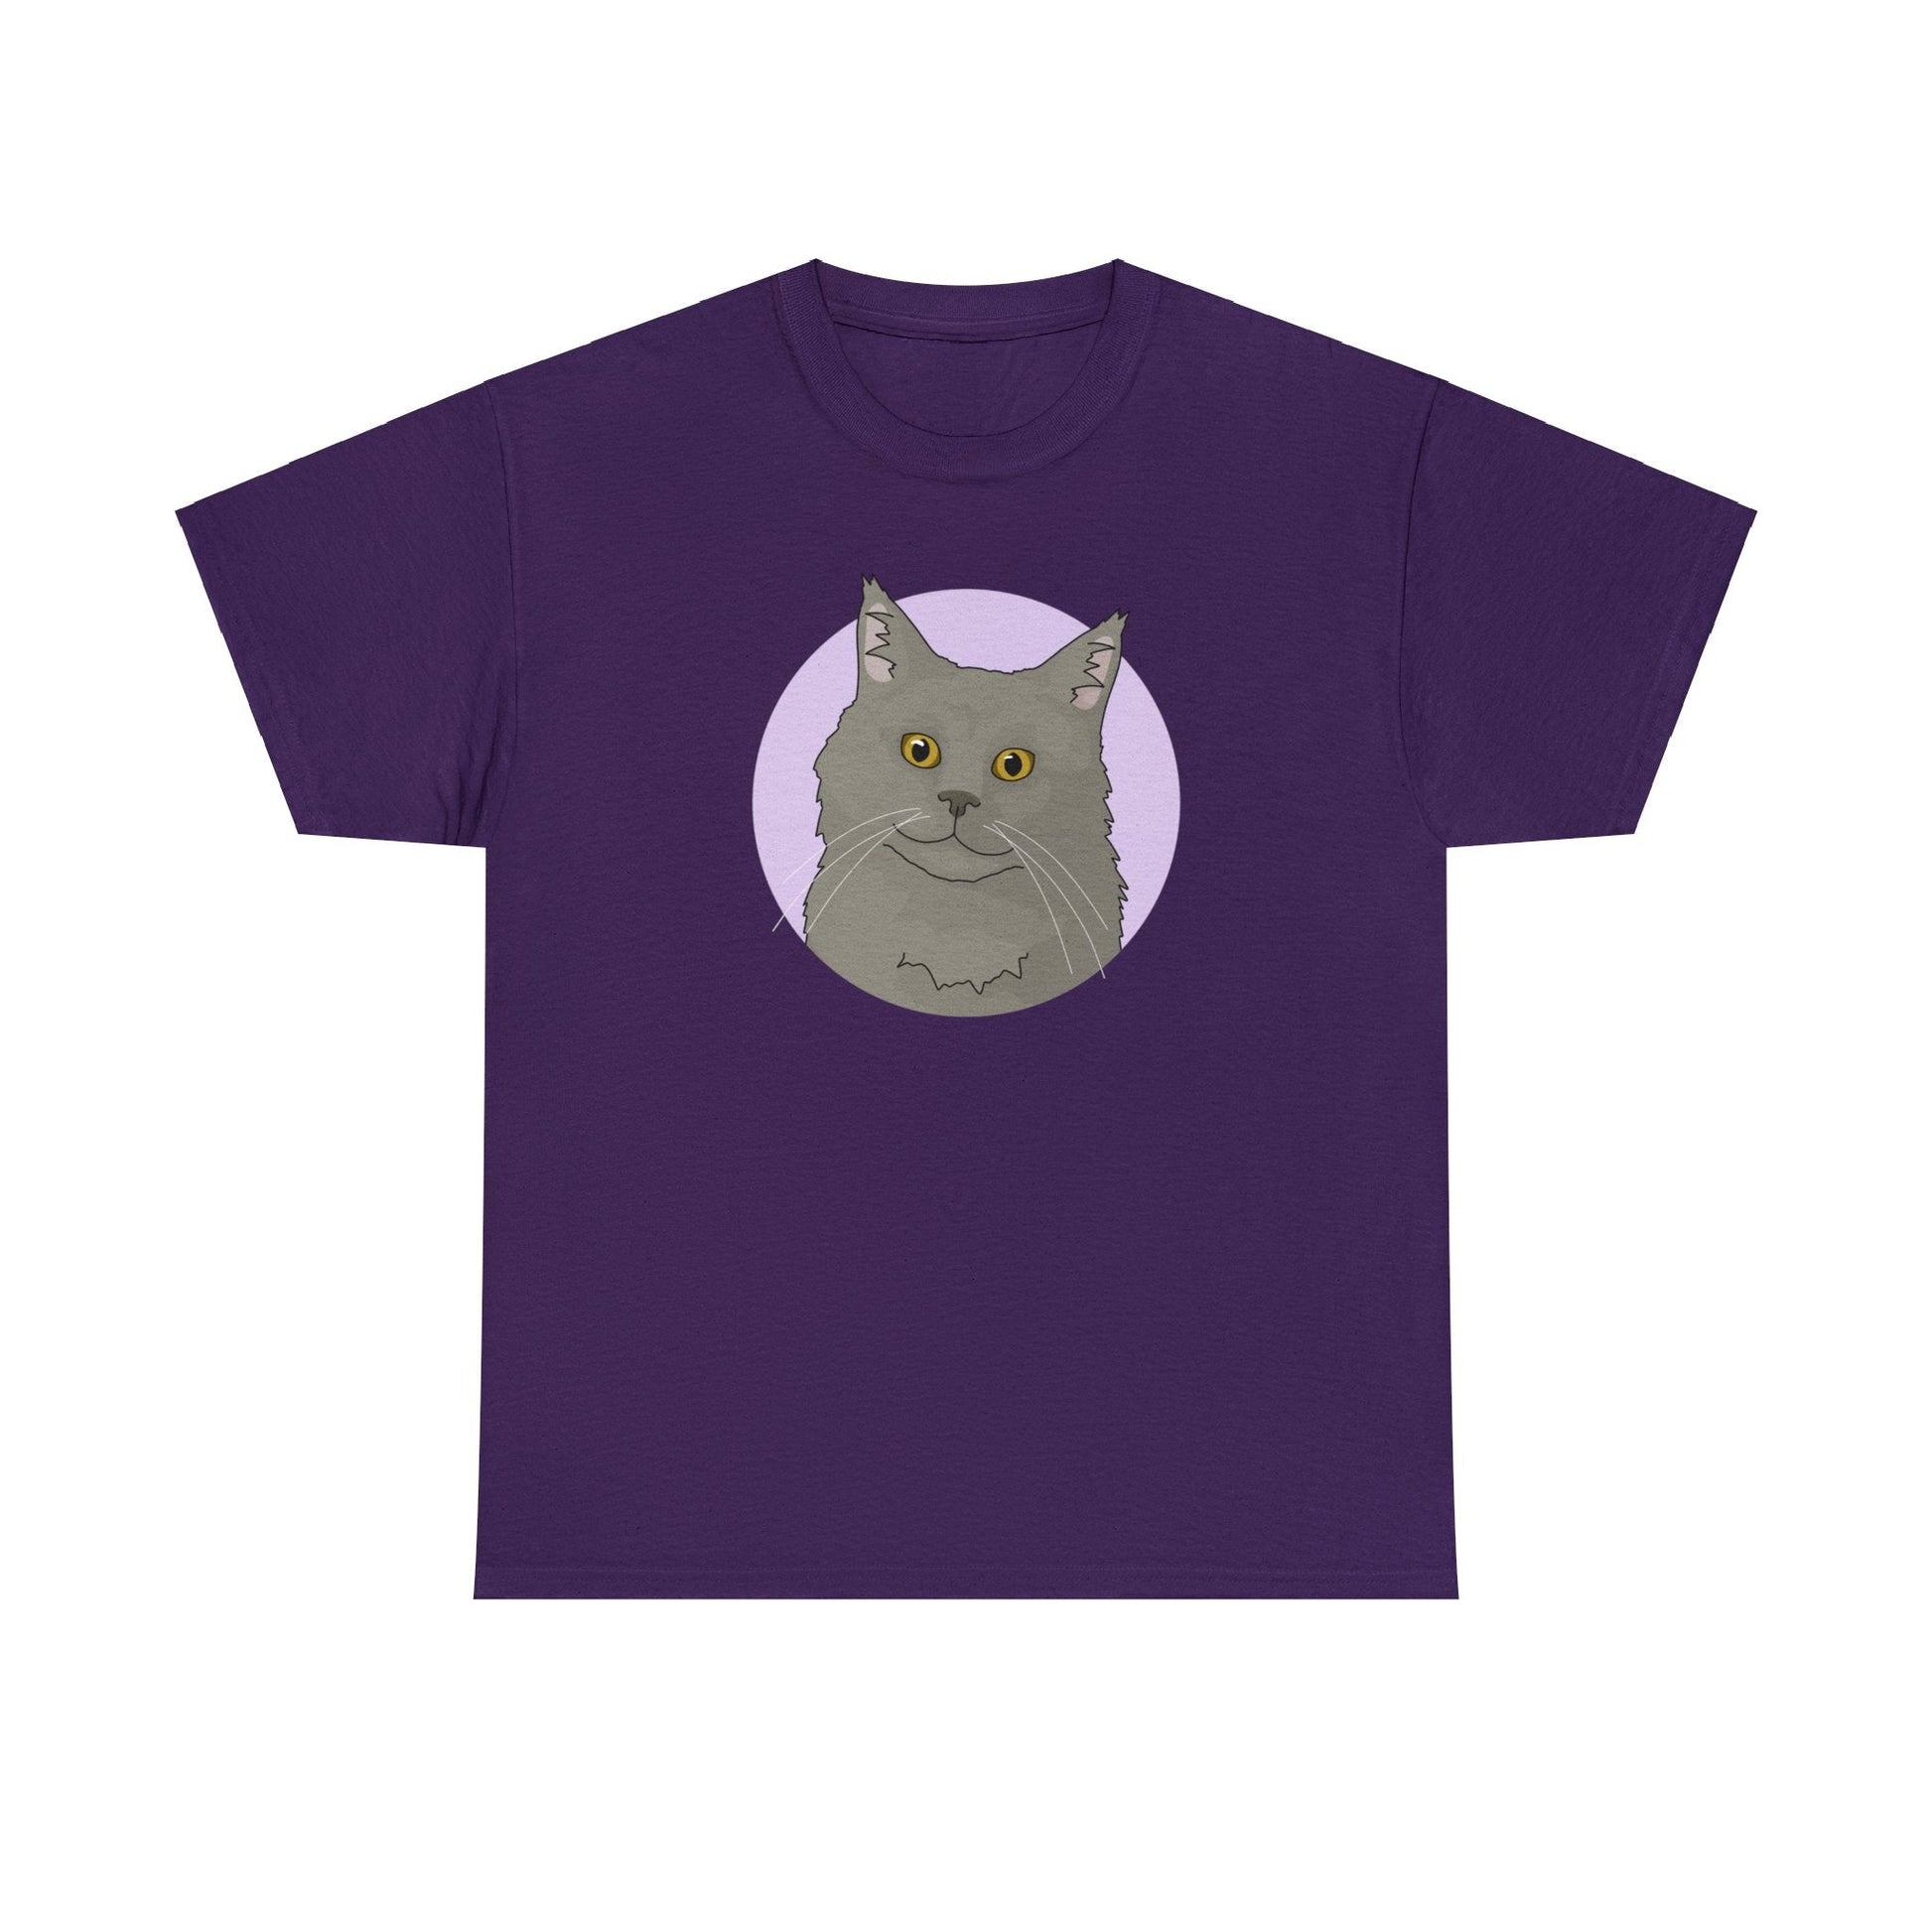 Maine Coon | T-shirt - Detezi Designs-17912091921251348453